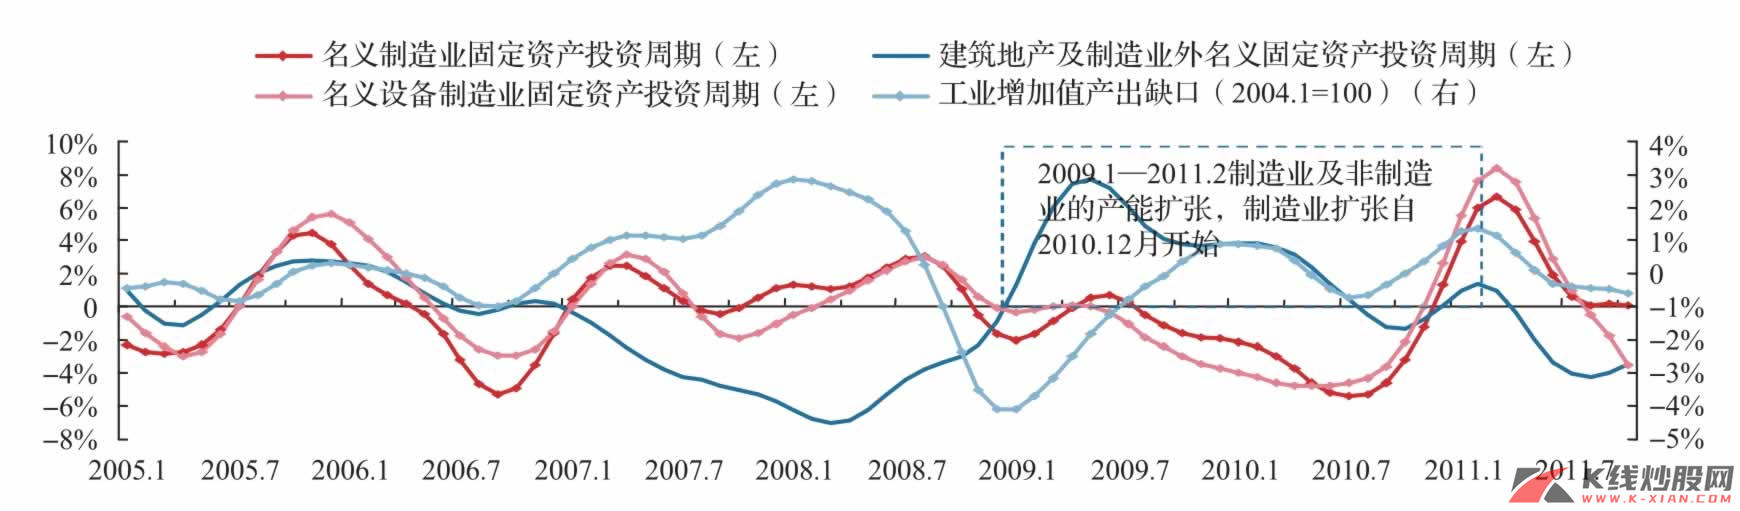 中国资本性支出周期：制造业及非制造业的扩张